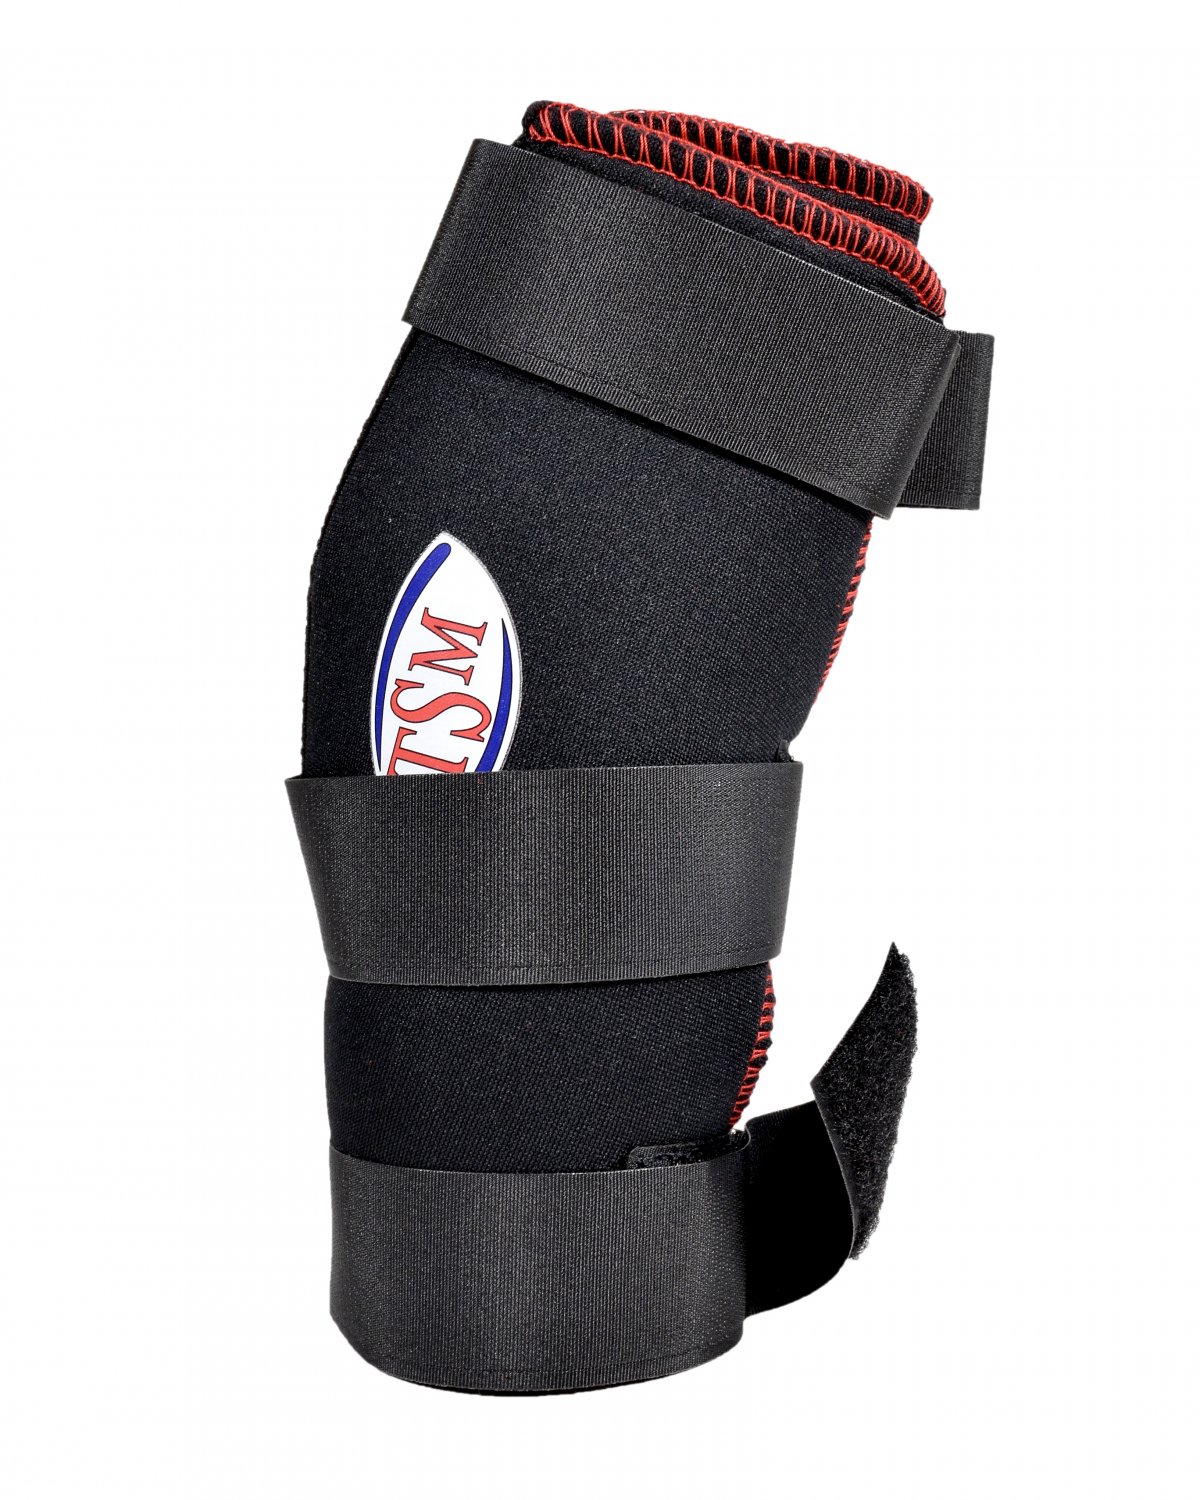 TSM Reha Bandage Hund für Tarsalgelenke Sprunggelenke mit Schiene